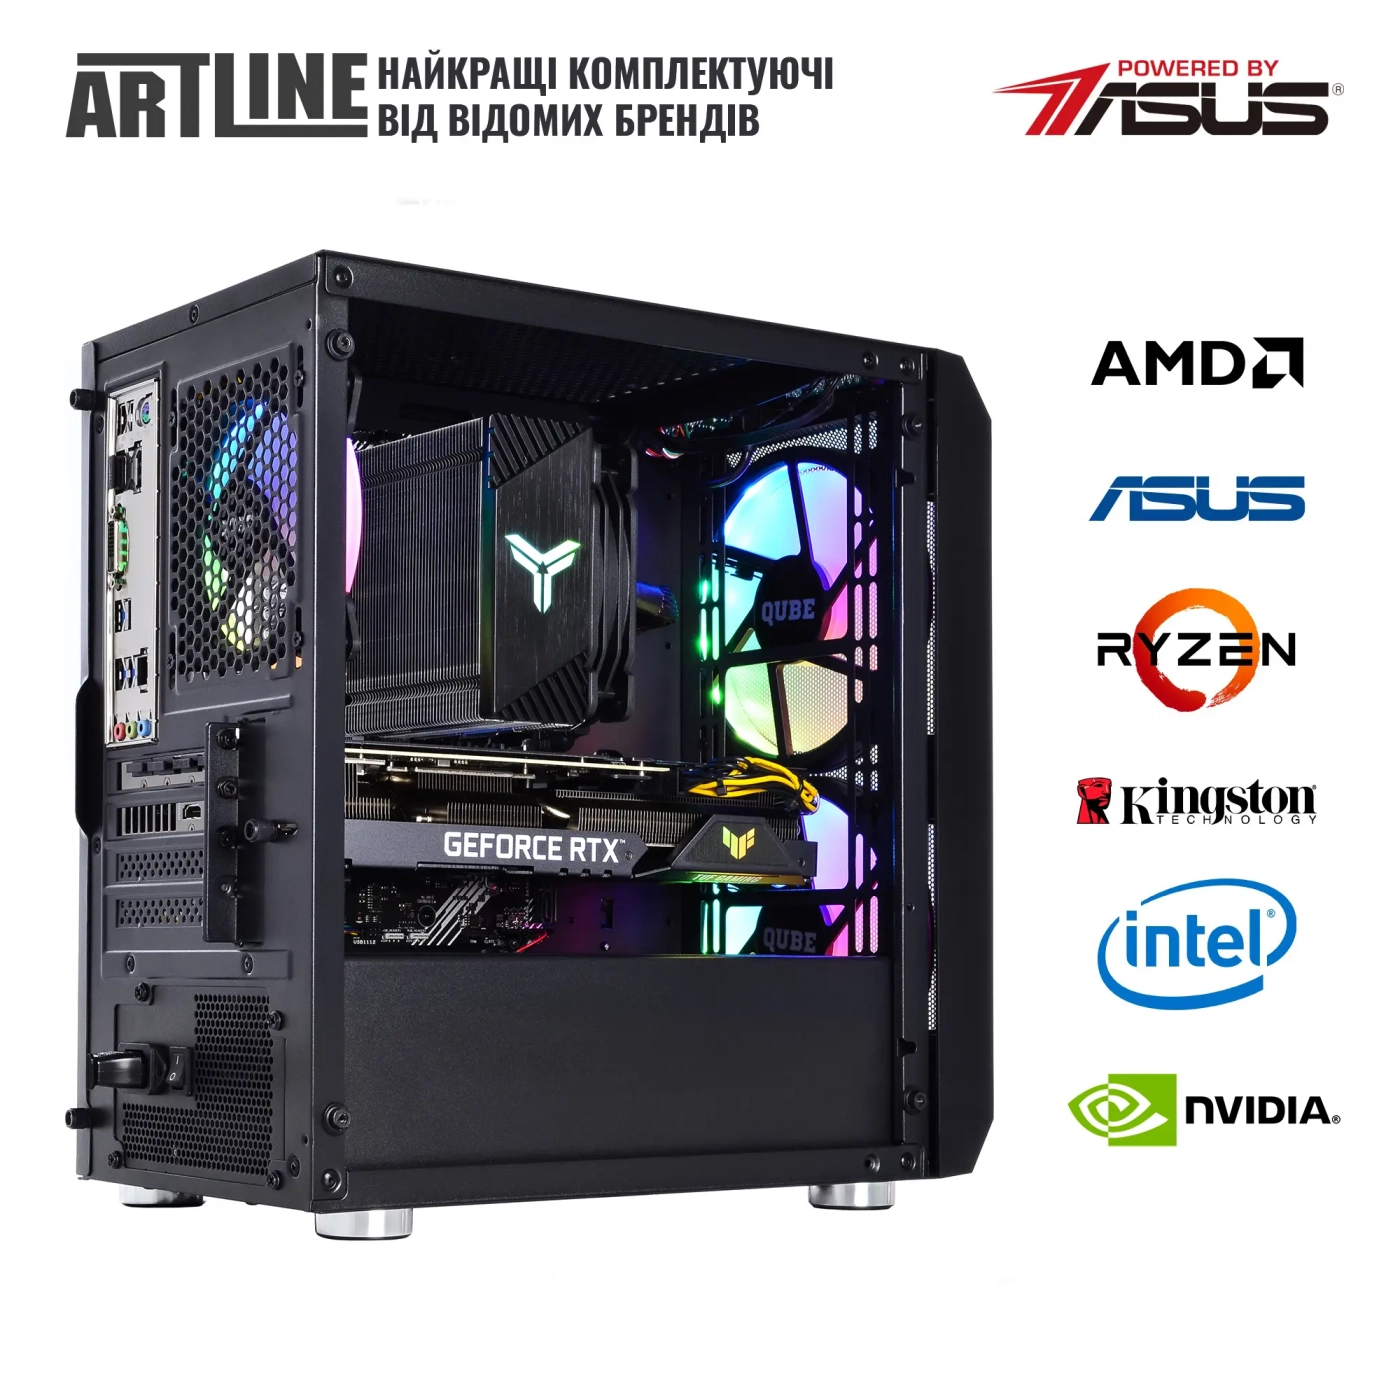 Купить Компьютер ARTLINE Gaming X75v70 - фото 8